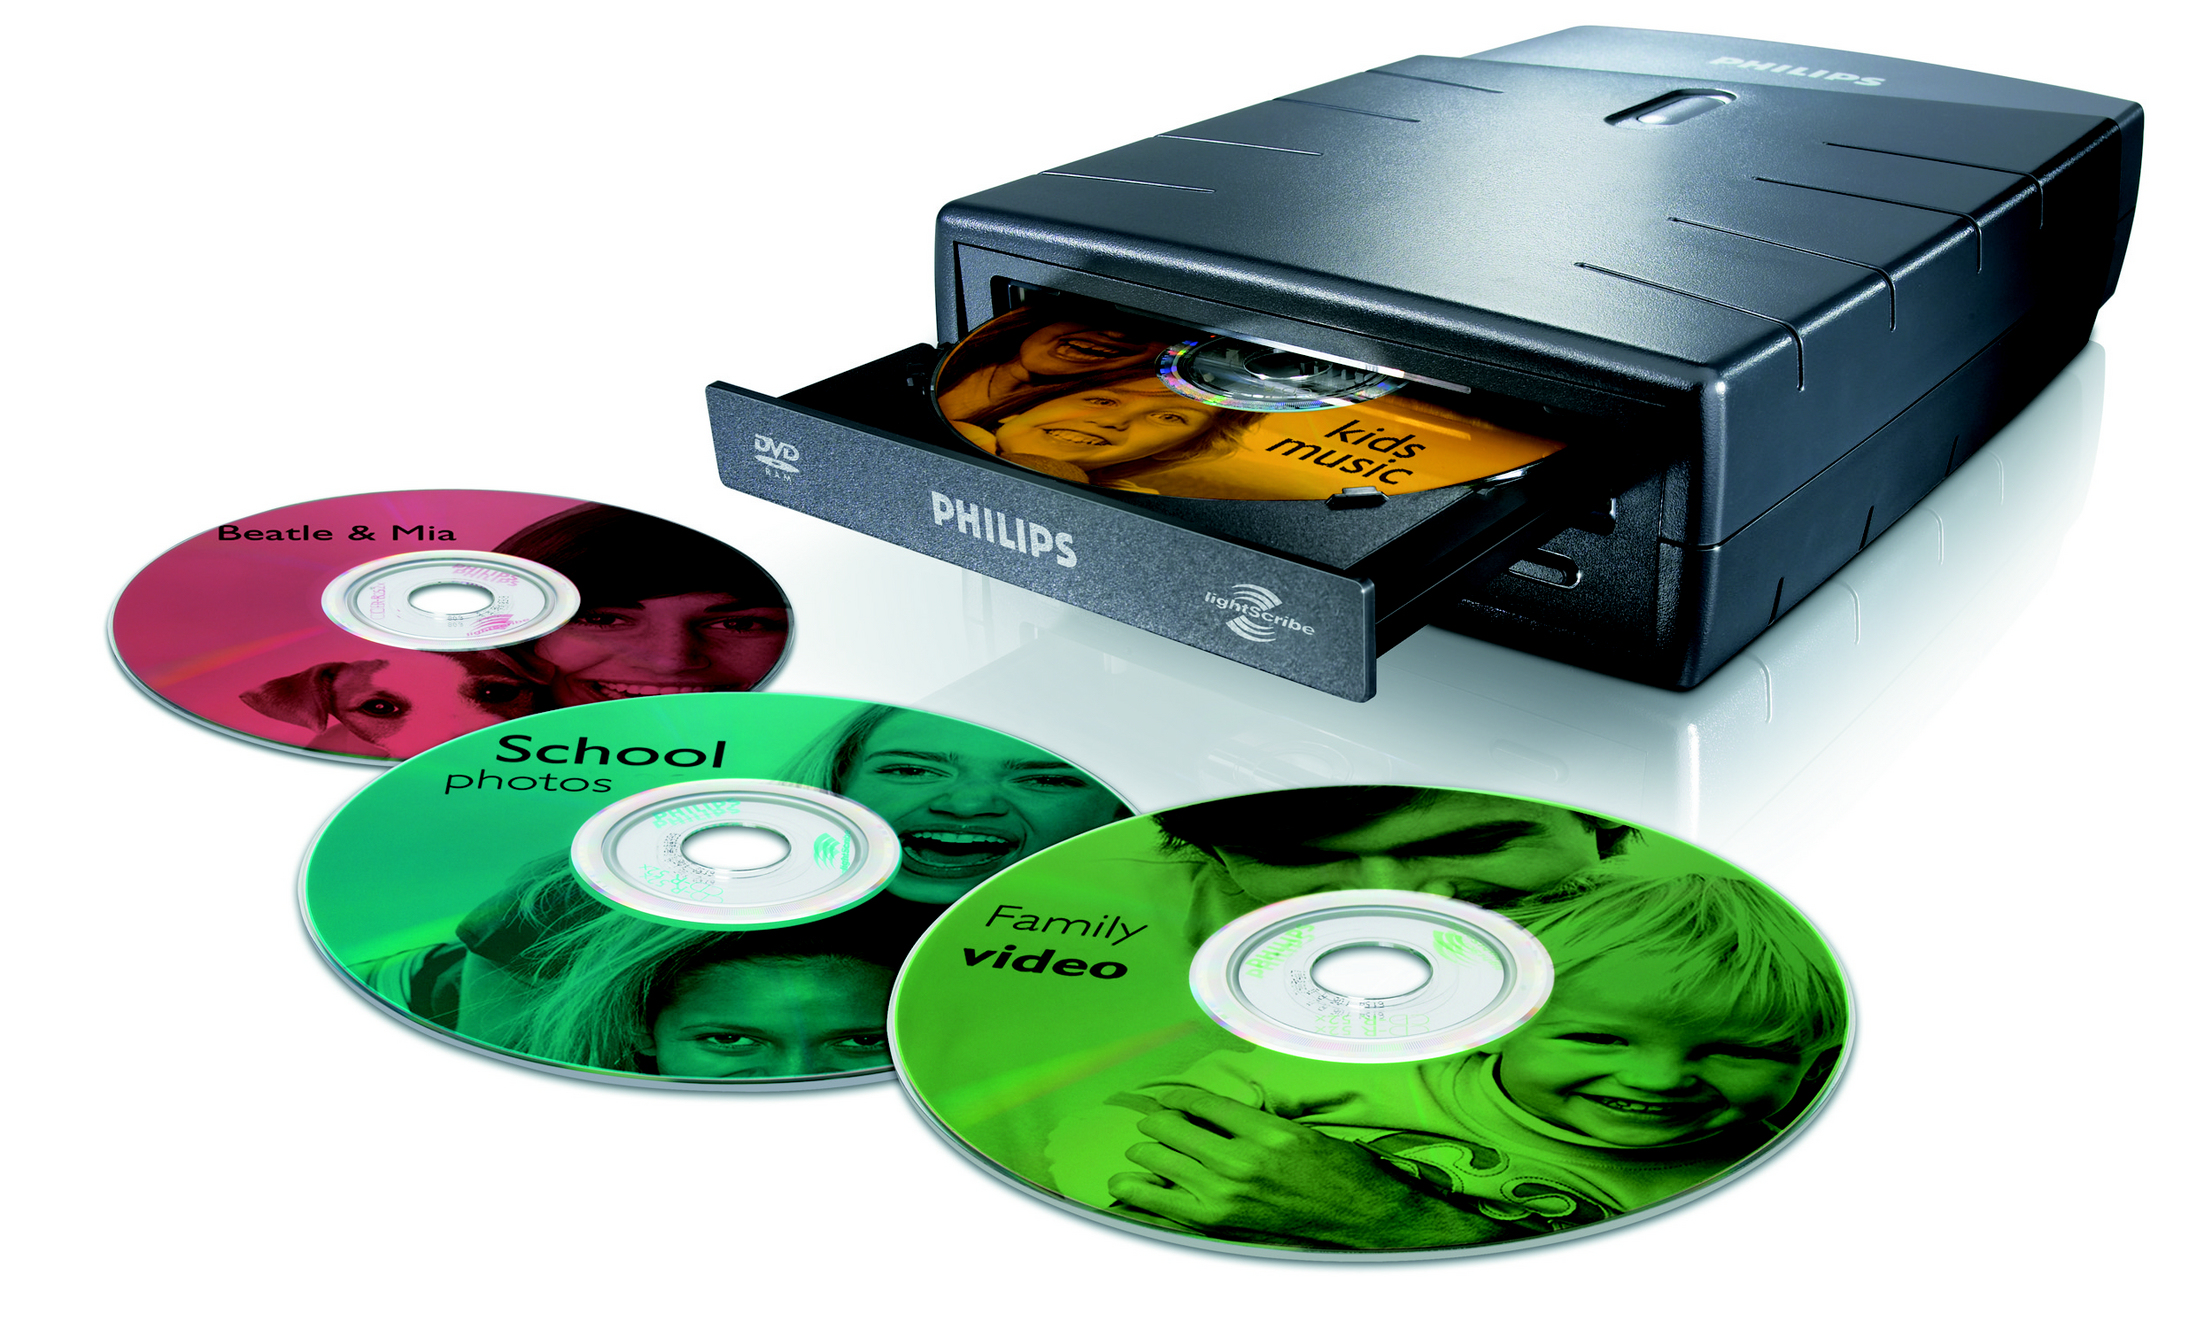 Накопители носители информации. Двд диск память. DVD-диски (DVD – Digital versatile Disk, цифровой универсальный диск),. DVD-R, DVD-RW диски. Внешняя память дисковые носители оптические.